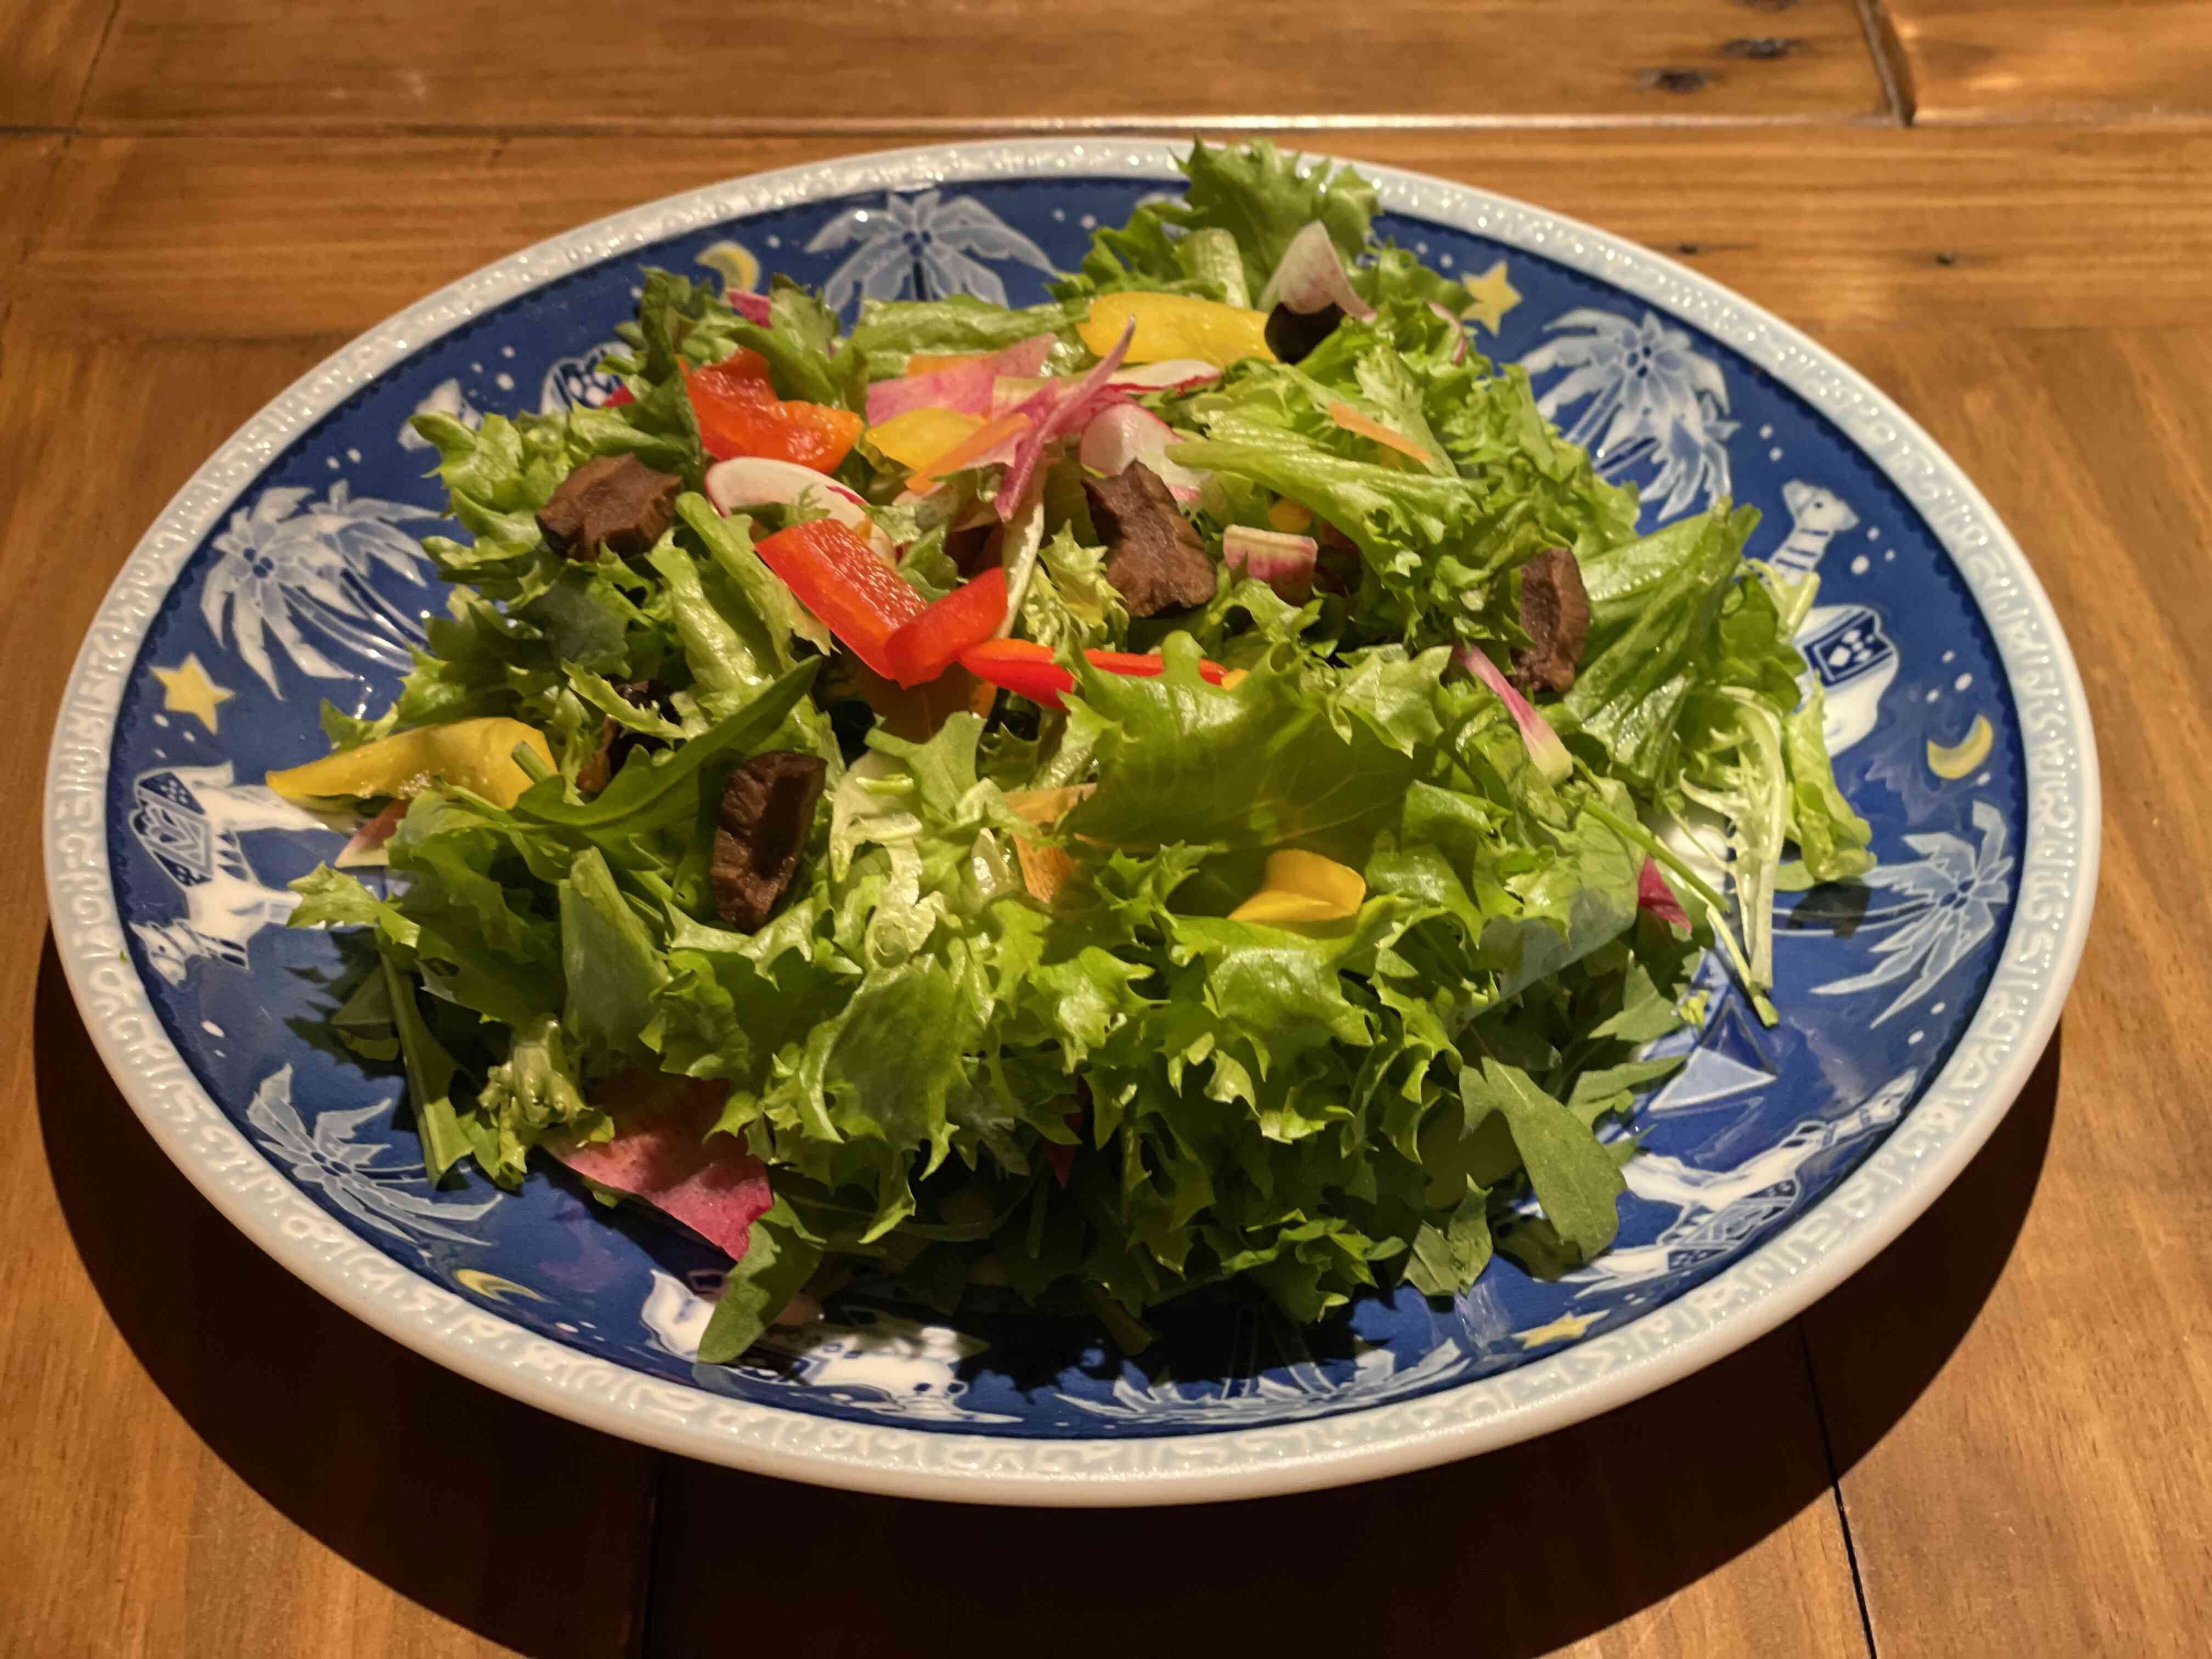 静岡県産のリーフレタスなどフレッシュなアルベロの菜園サラダ。自家製ドレッシングで召し上がってください。